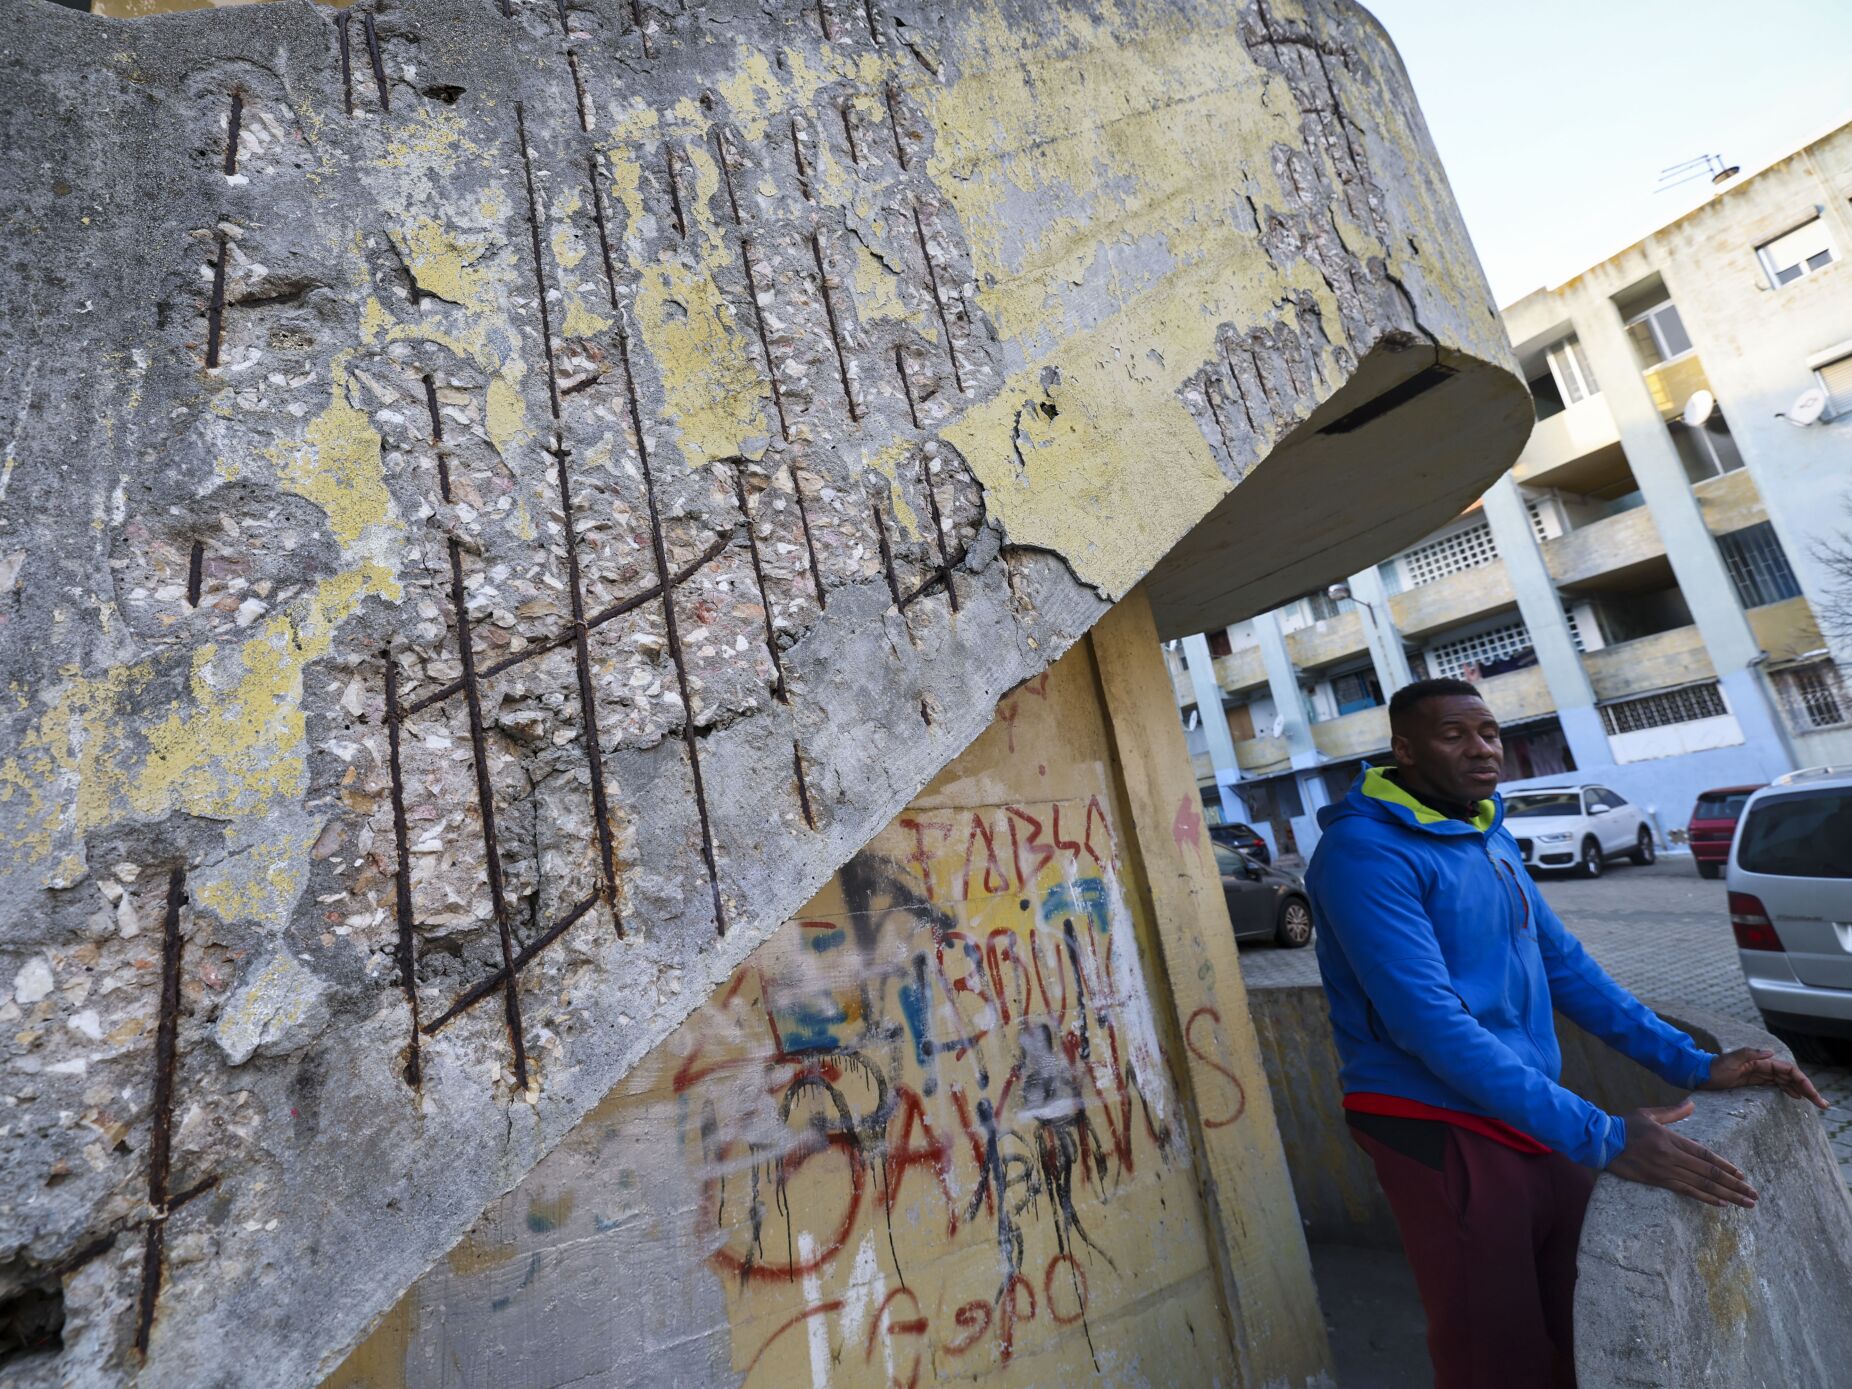 Lisboa. Bairros camarários sem obras apresentam riscos e problemas sérios